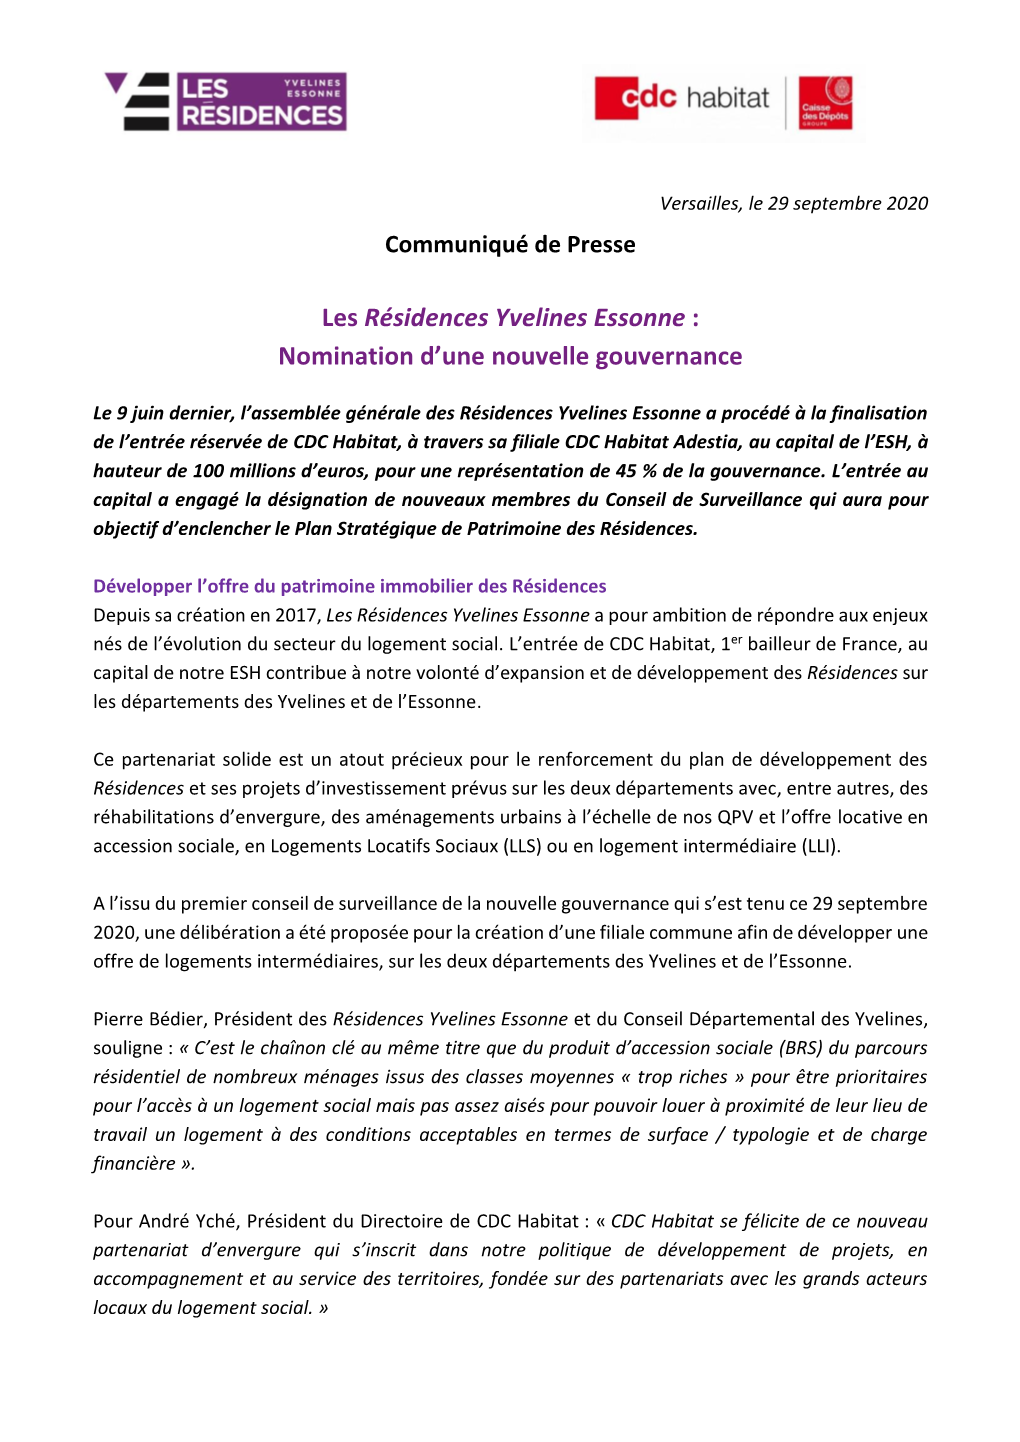 Les Résidences Yvelines Essonne : Nomination D'une Nouvelle